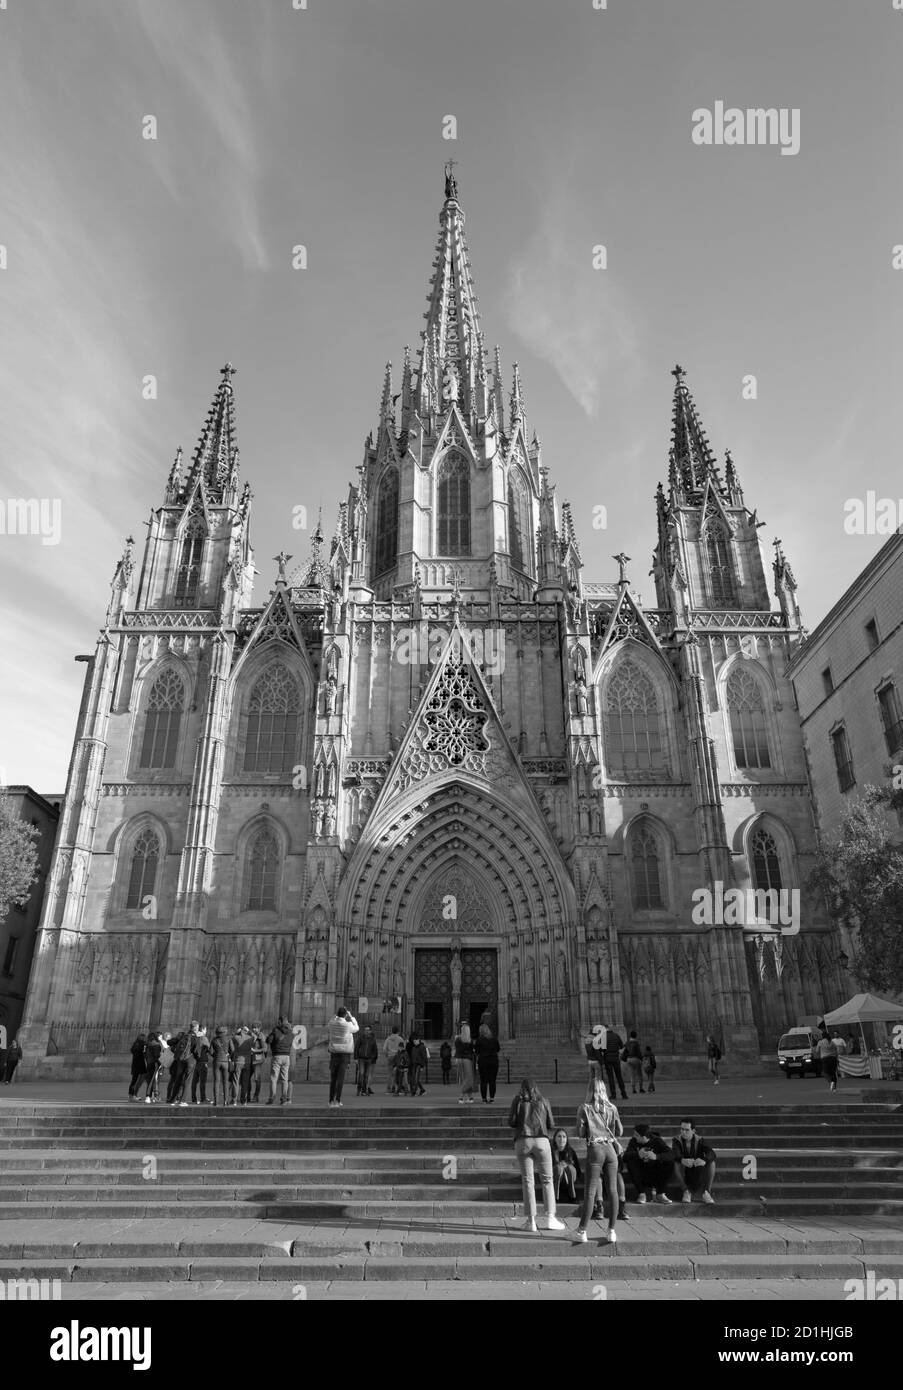 BARCELONA, SPANIEN - 4. MÄRZ 2020: Das Portal der Kathedrale des Heiligen Kreuzes und St. Eulalia. Stockfoto